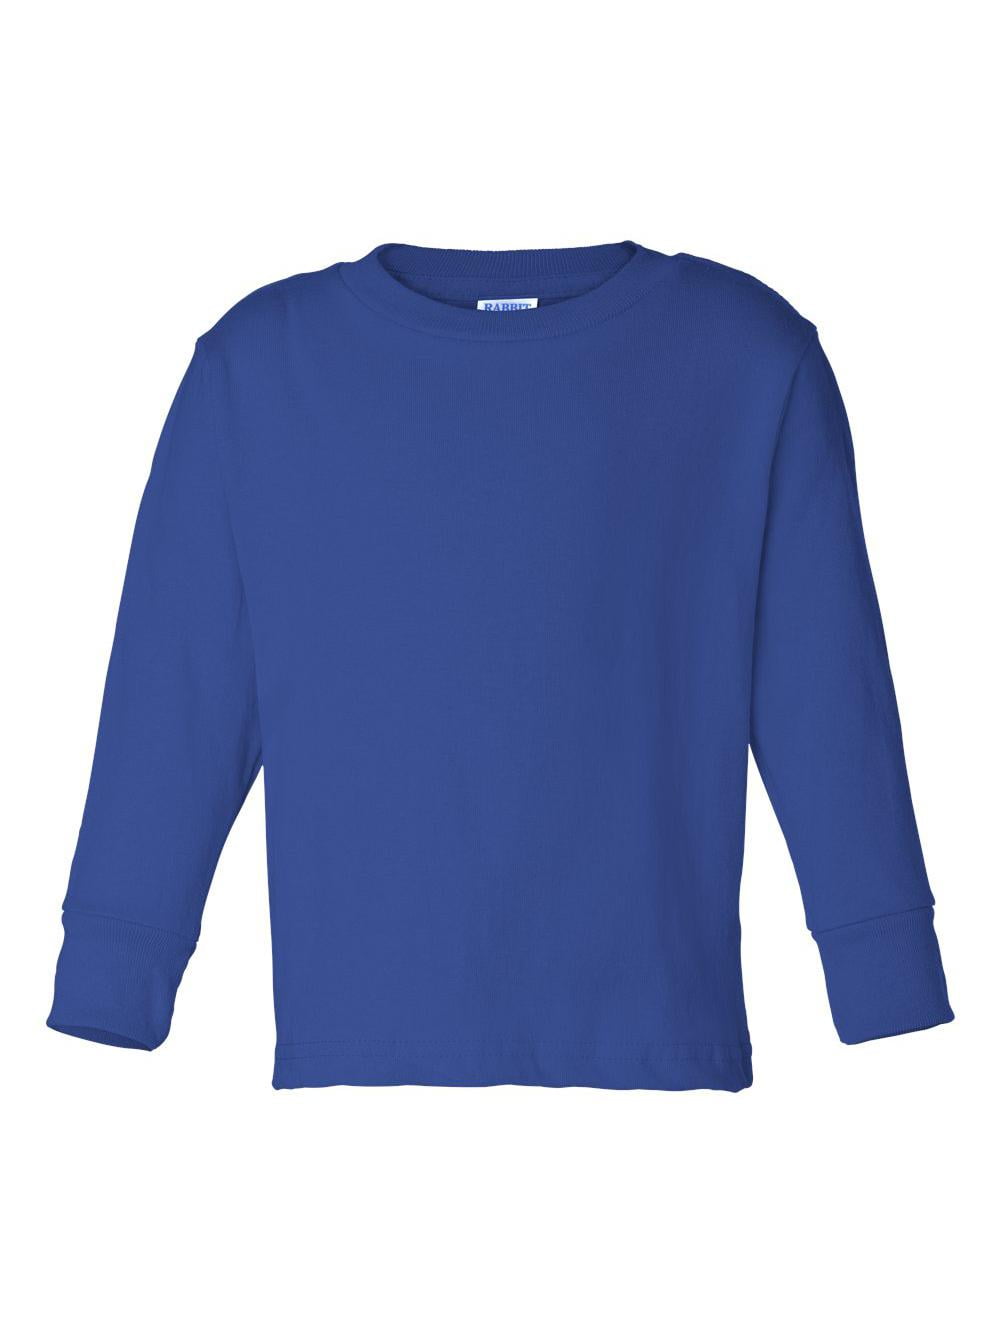 Toddler Long-Sleeve T-Shirt - LIGHT BLUE - 3T